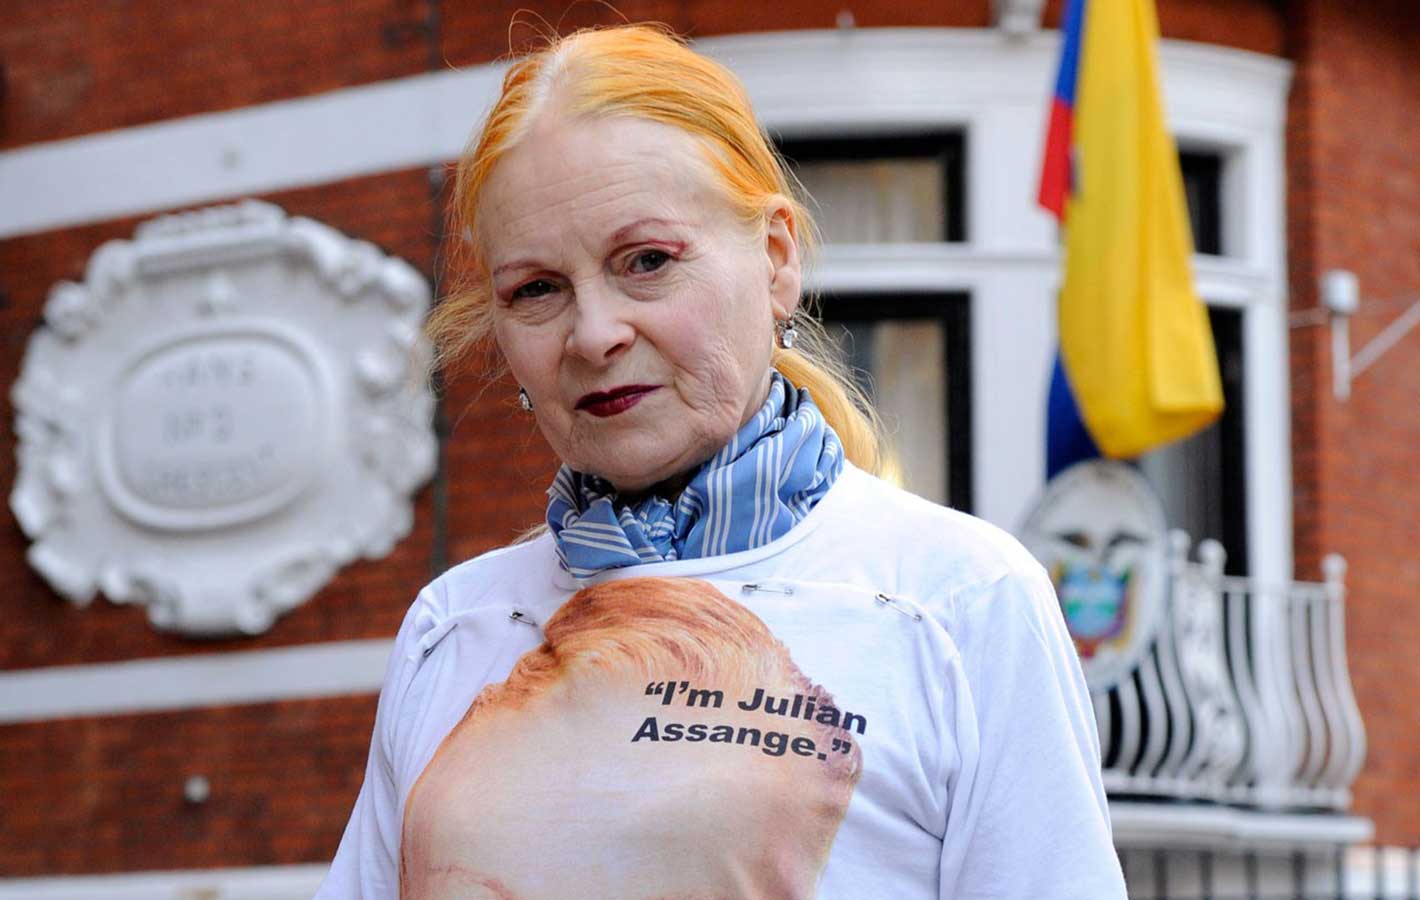 Vivienne Westwood nowymi ubraniami wspiera uwolnienie Juliana Assange’a